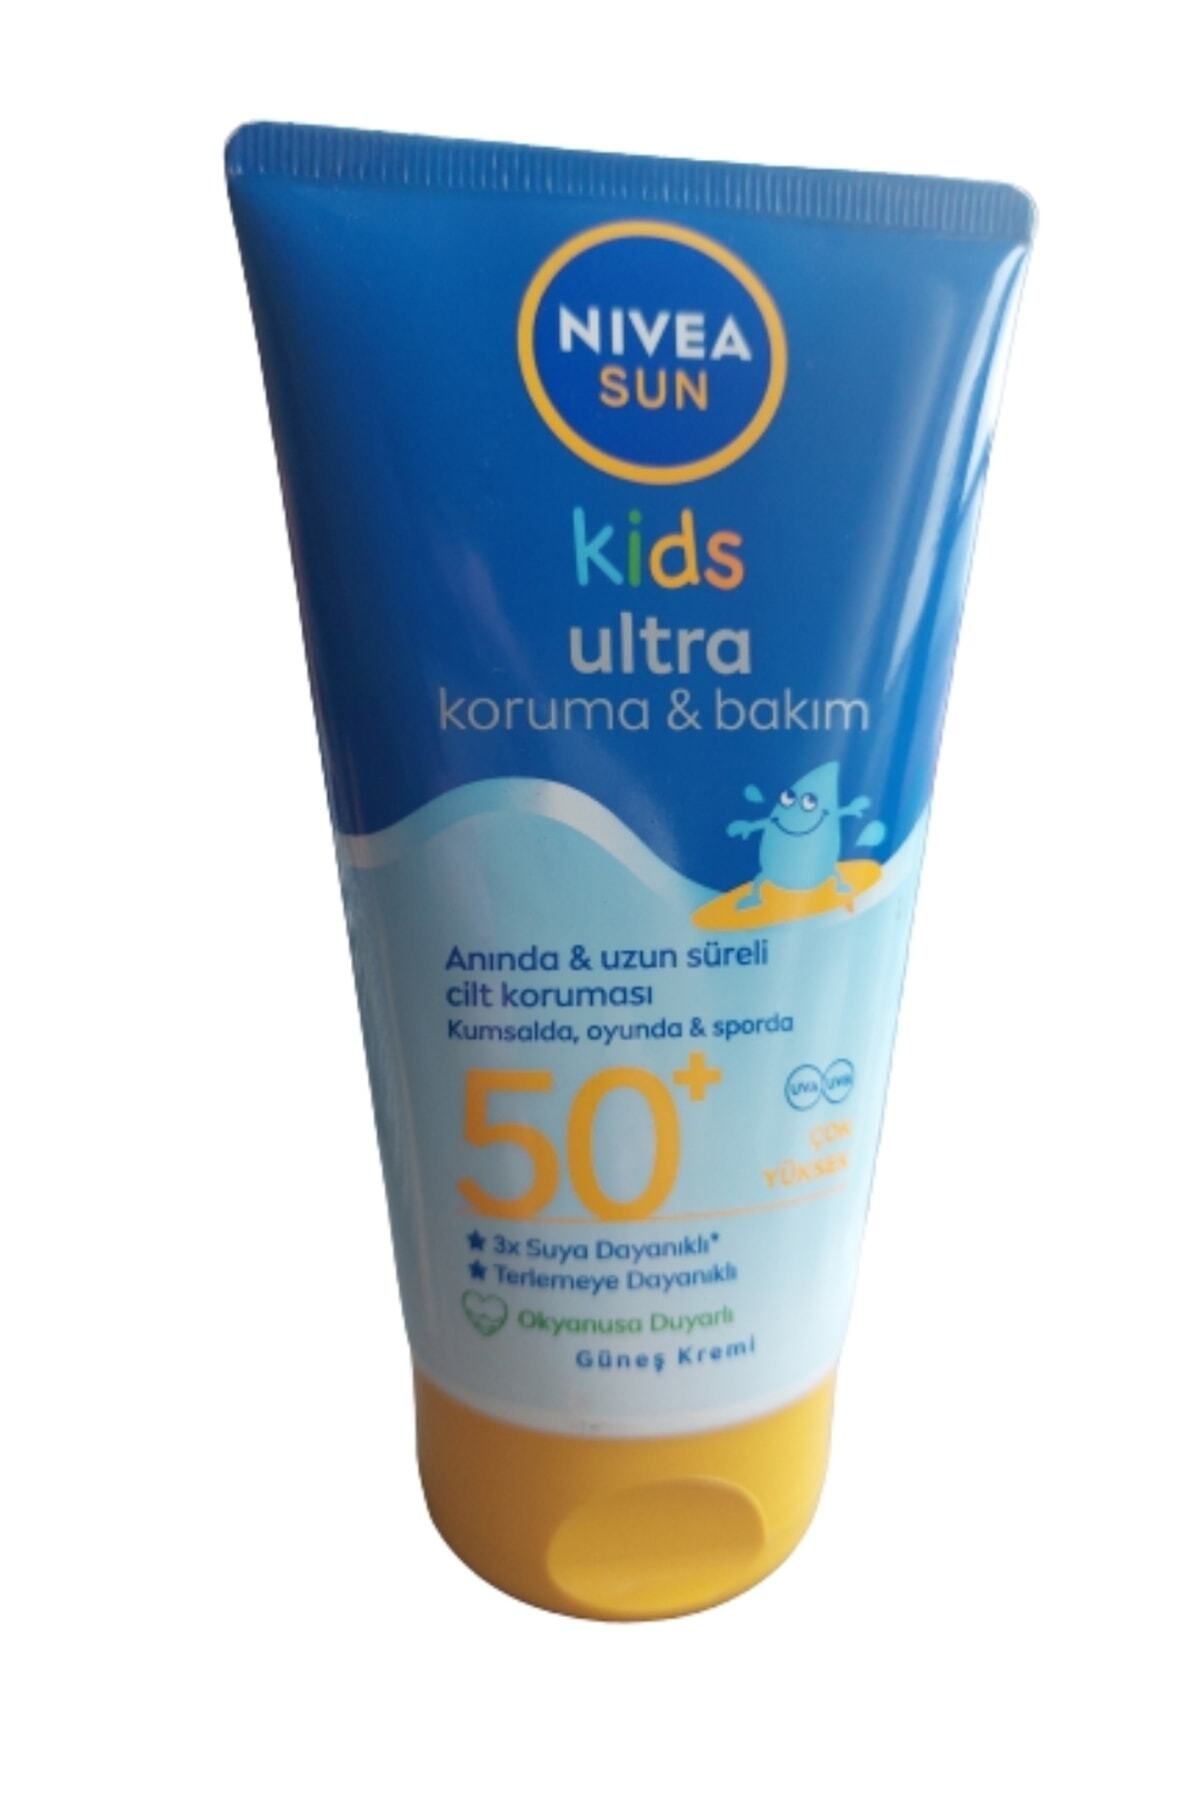 NIVEA Nıvea Sun Ultra Kids Koruma &bakim Çocuk Güneş Kremi Kids 50 Faktör 150 ml